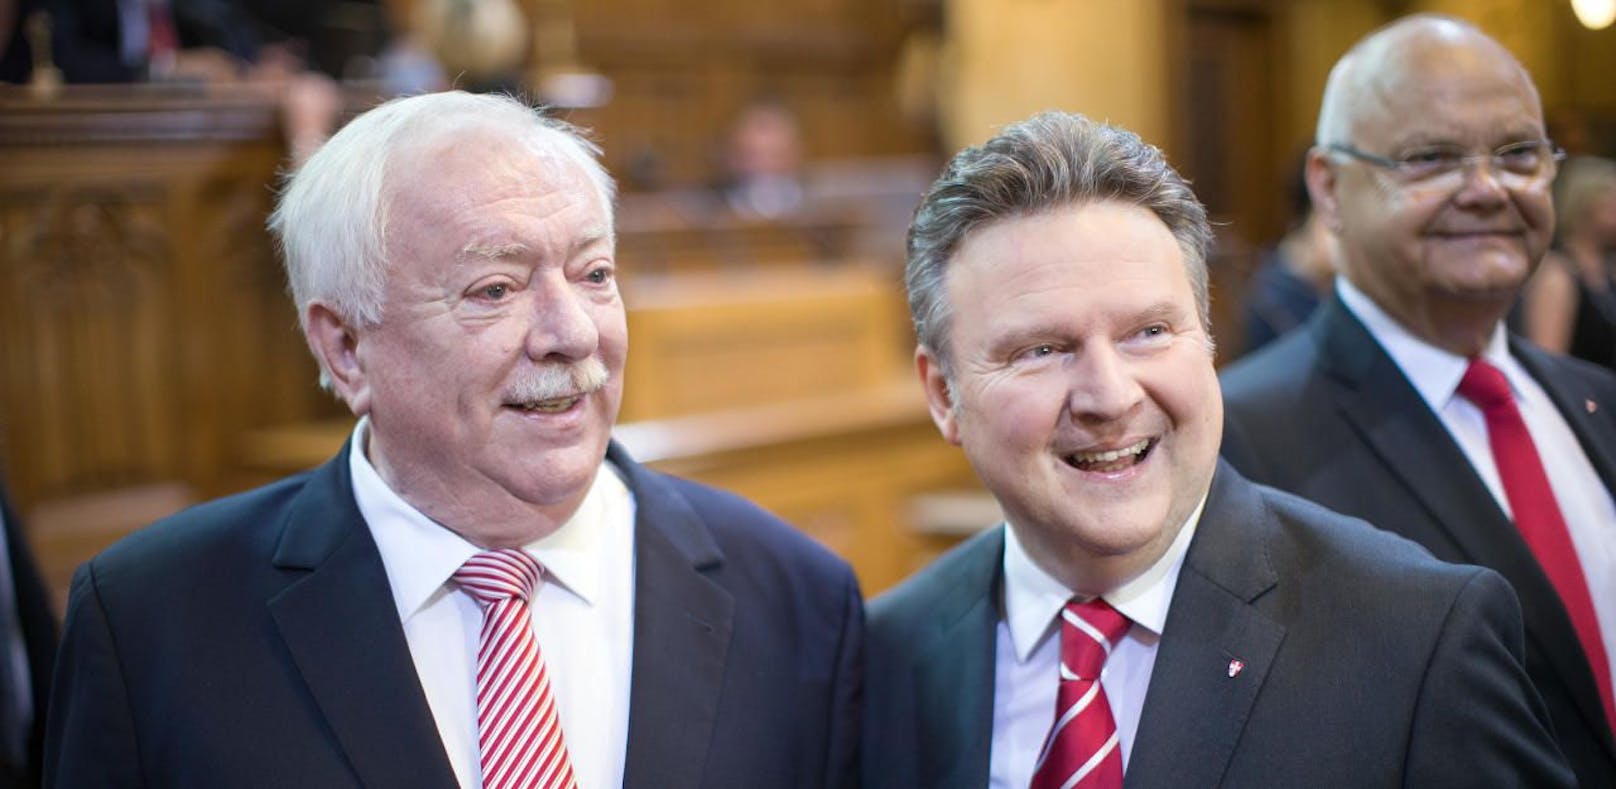 Bürgermeister Michael Häupl und sein gewählter Nachfolger Michael Ludwig.